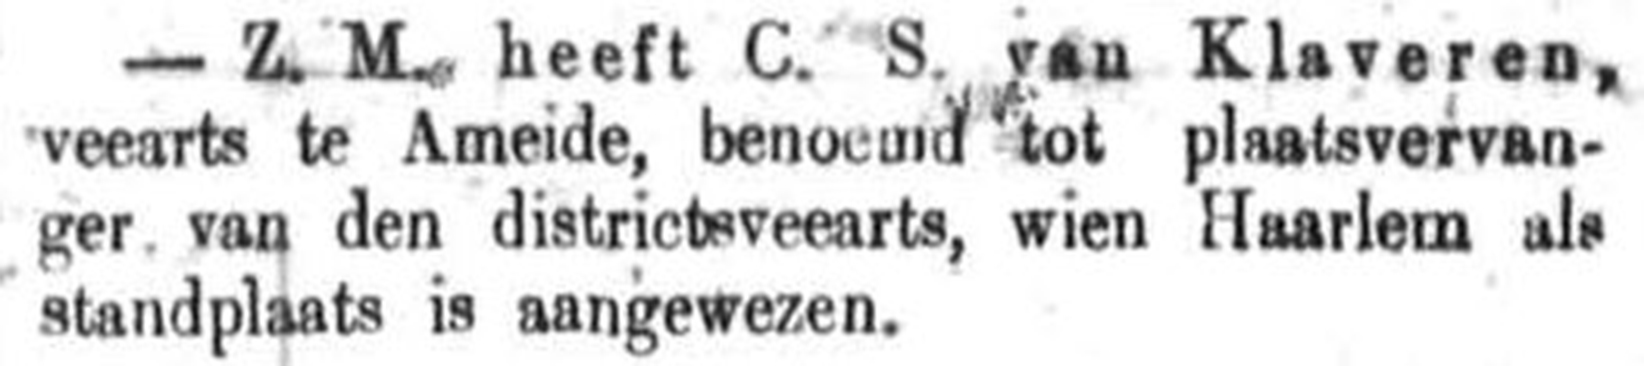 Schoonhovensche Courant 00119 1871-10-08 artikel 1